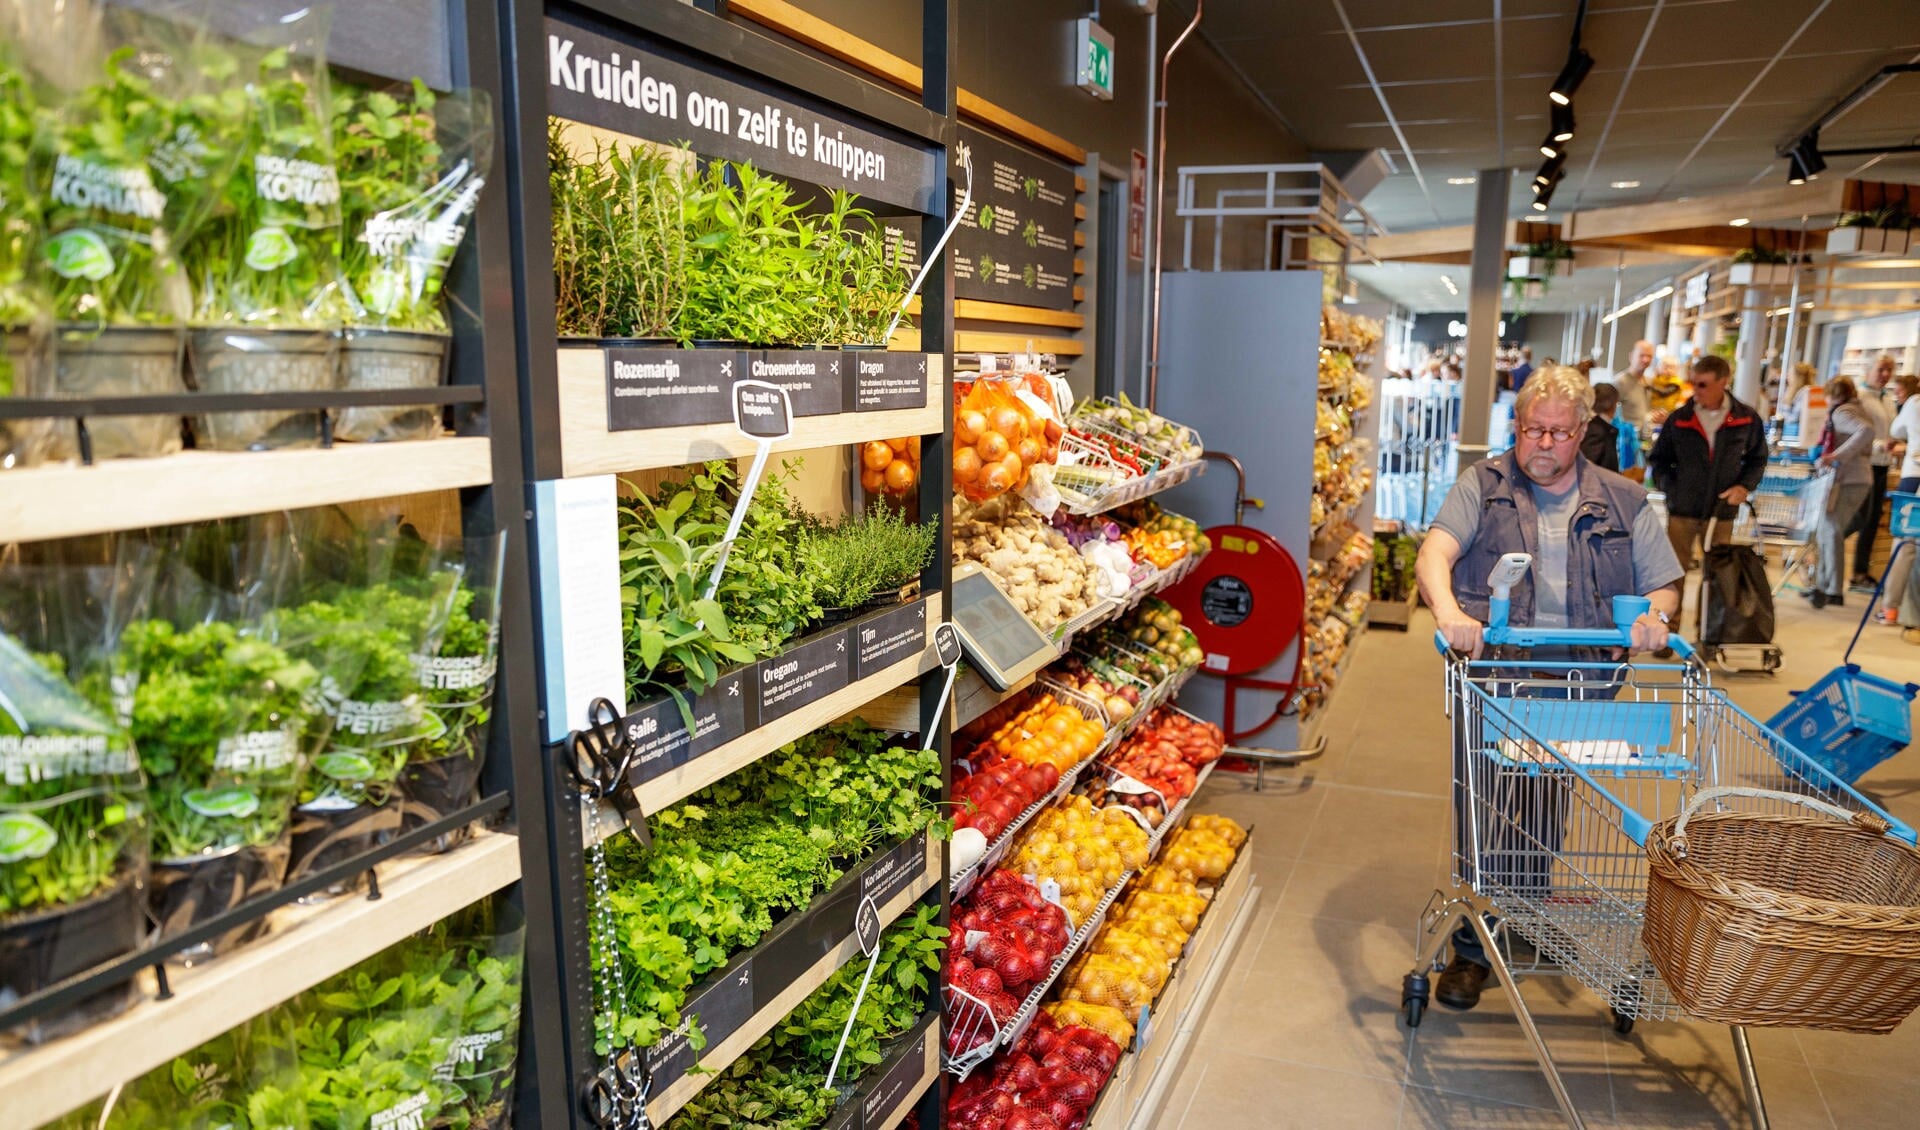 Bij binnenkomst van de vernieuwde Albert Heijn zien klanten direct een wereld van verse groenten en fruit.